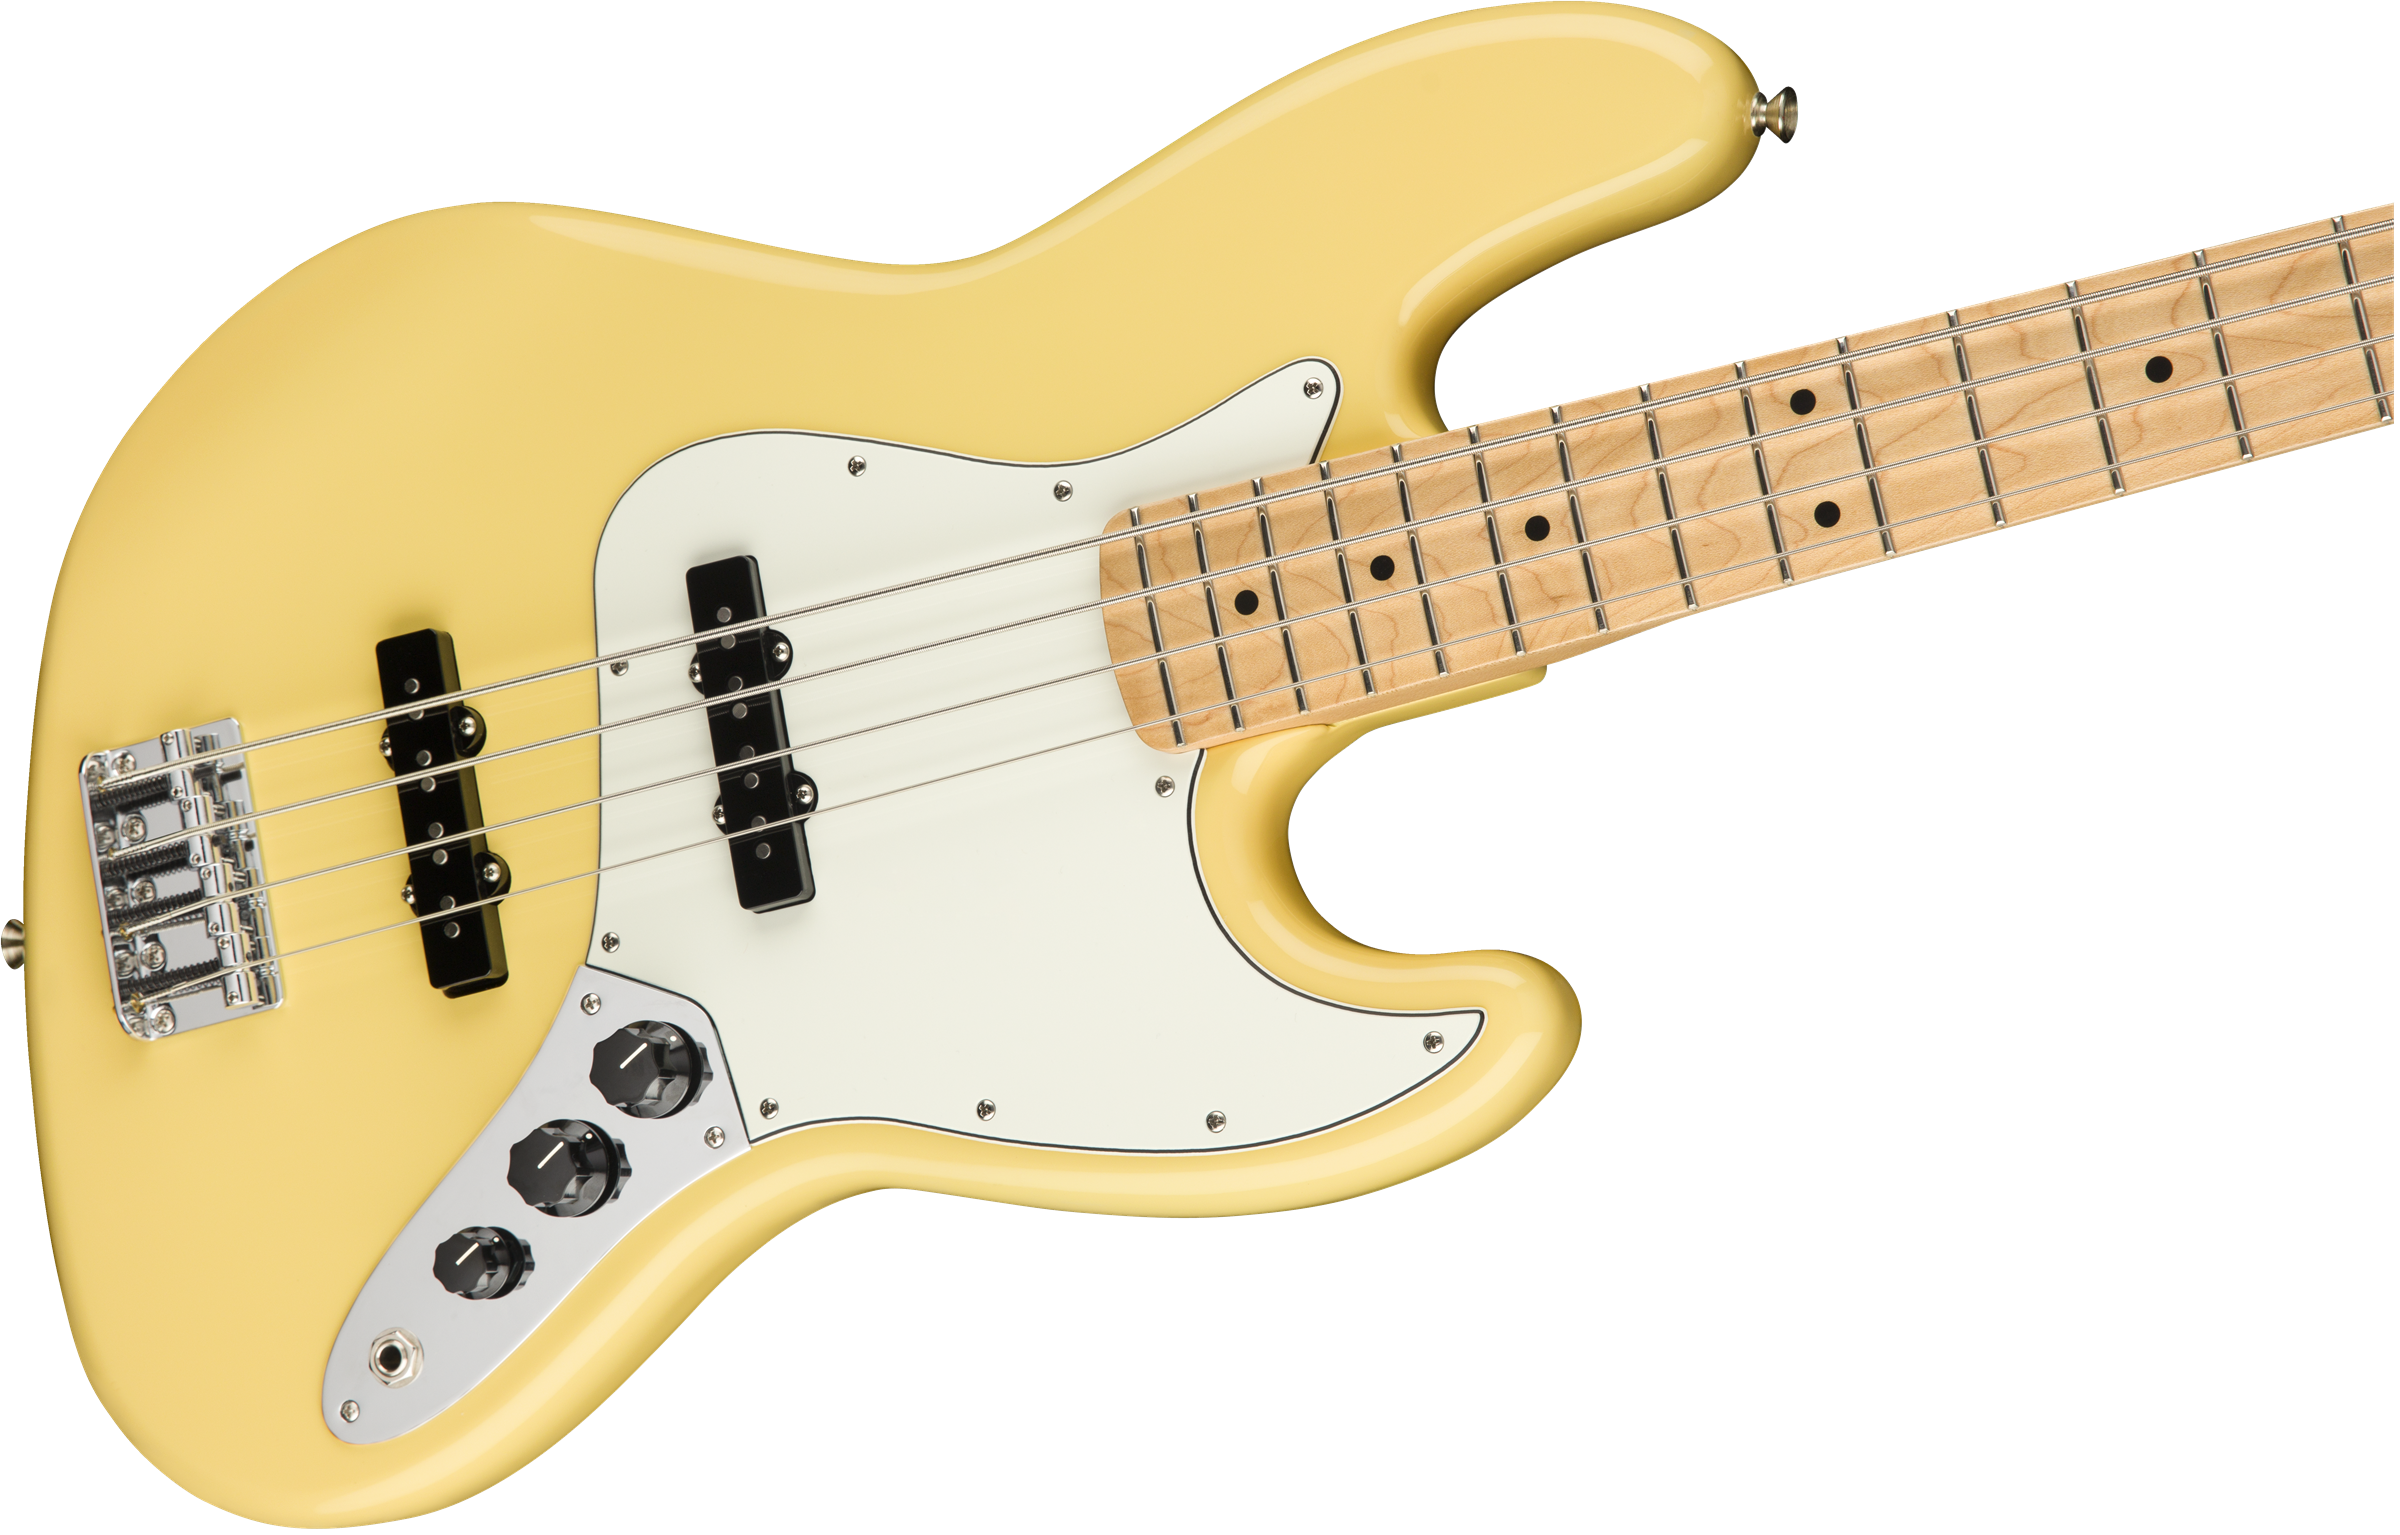 Fender Player Jazz Bass, Maple Fingerboard, Buttercream 0149902534